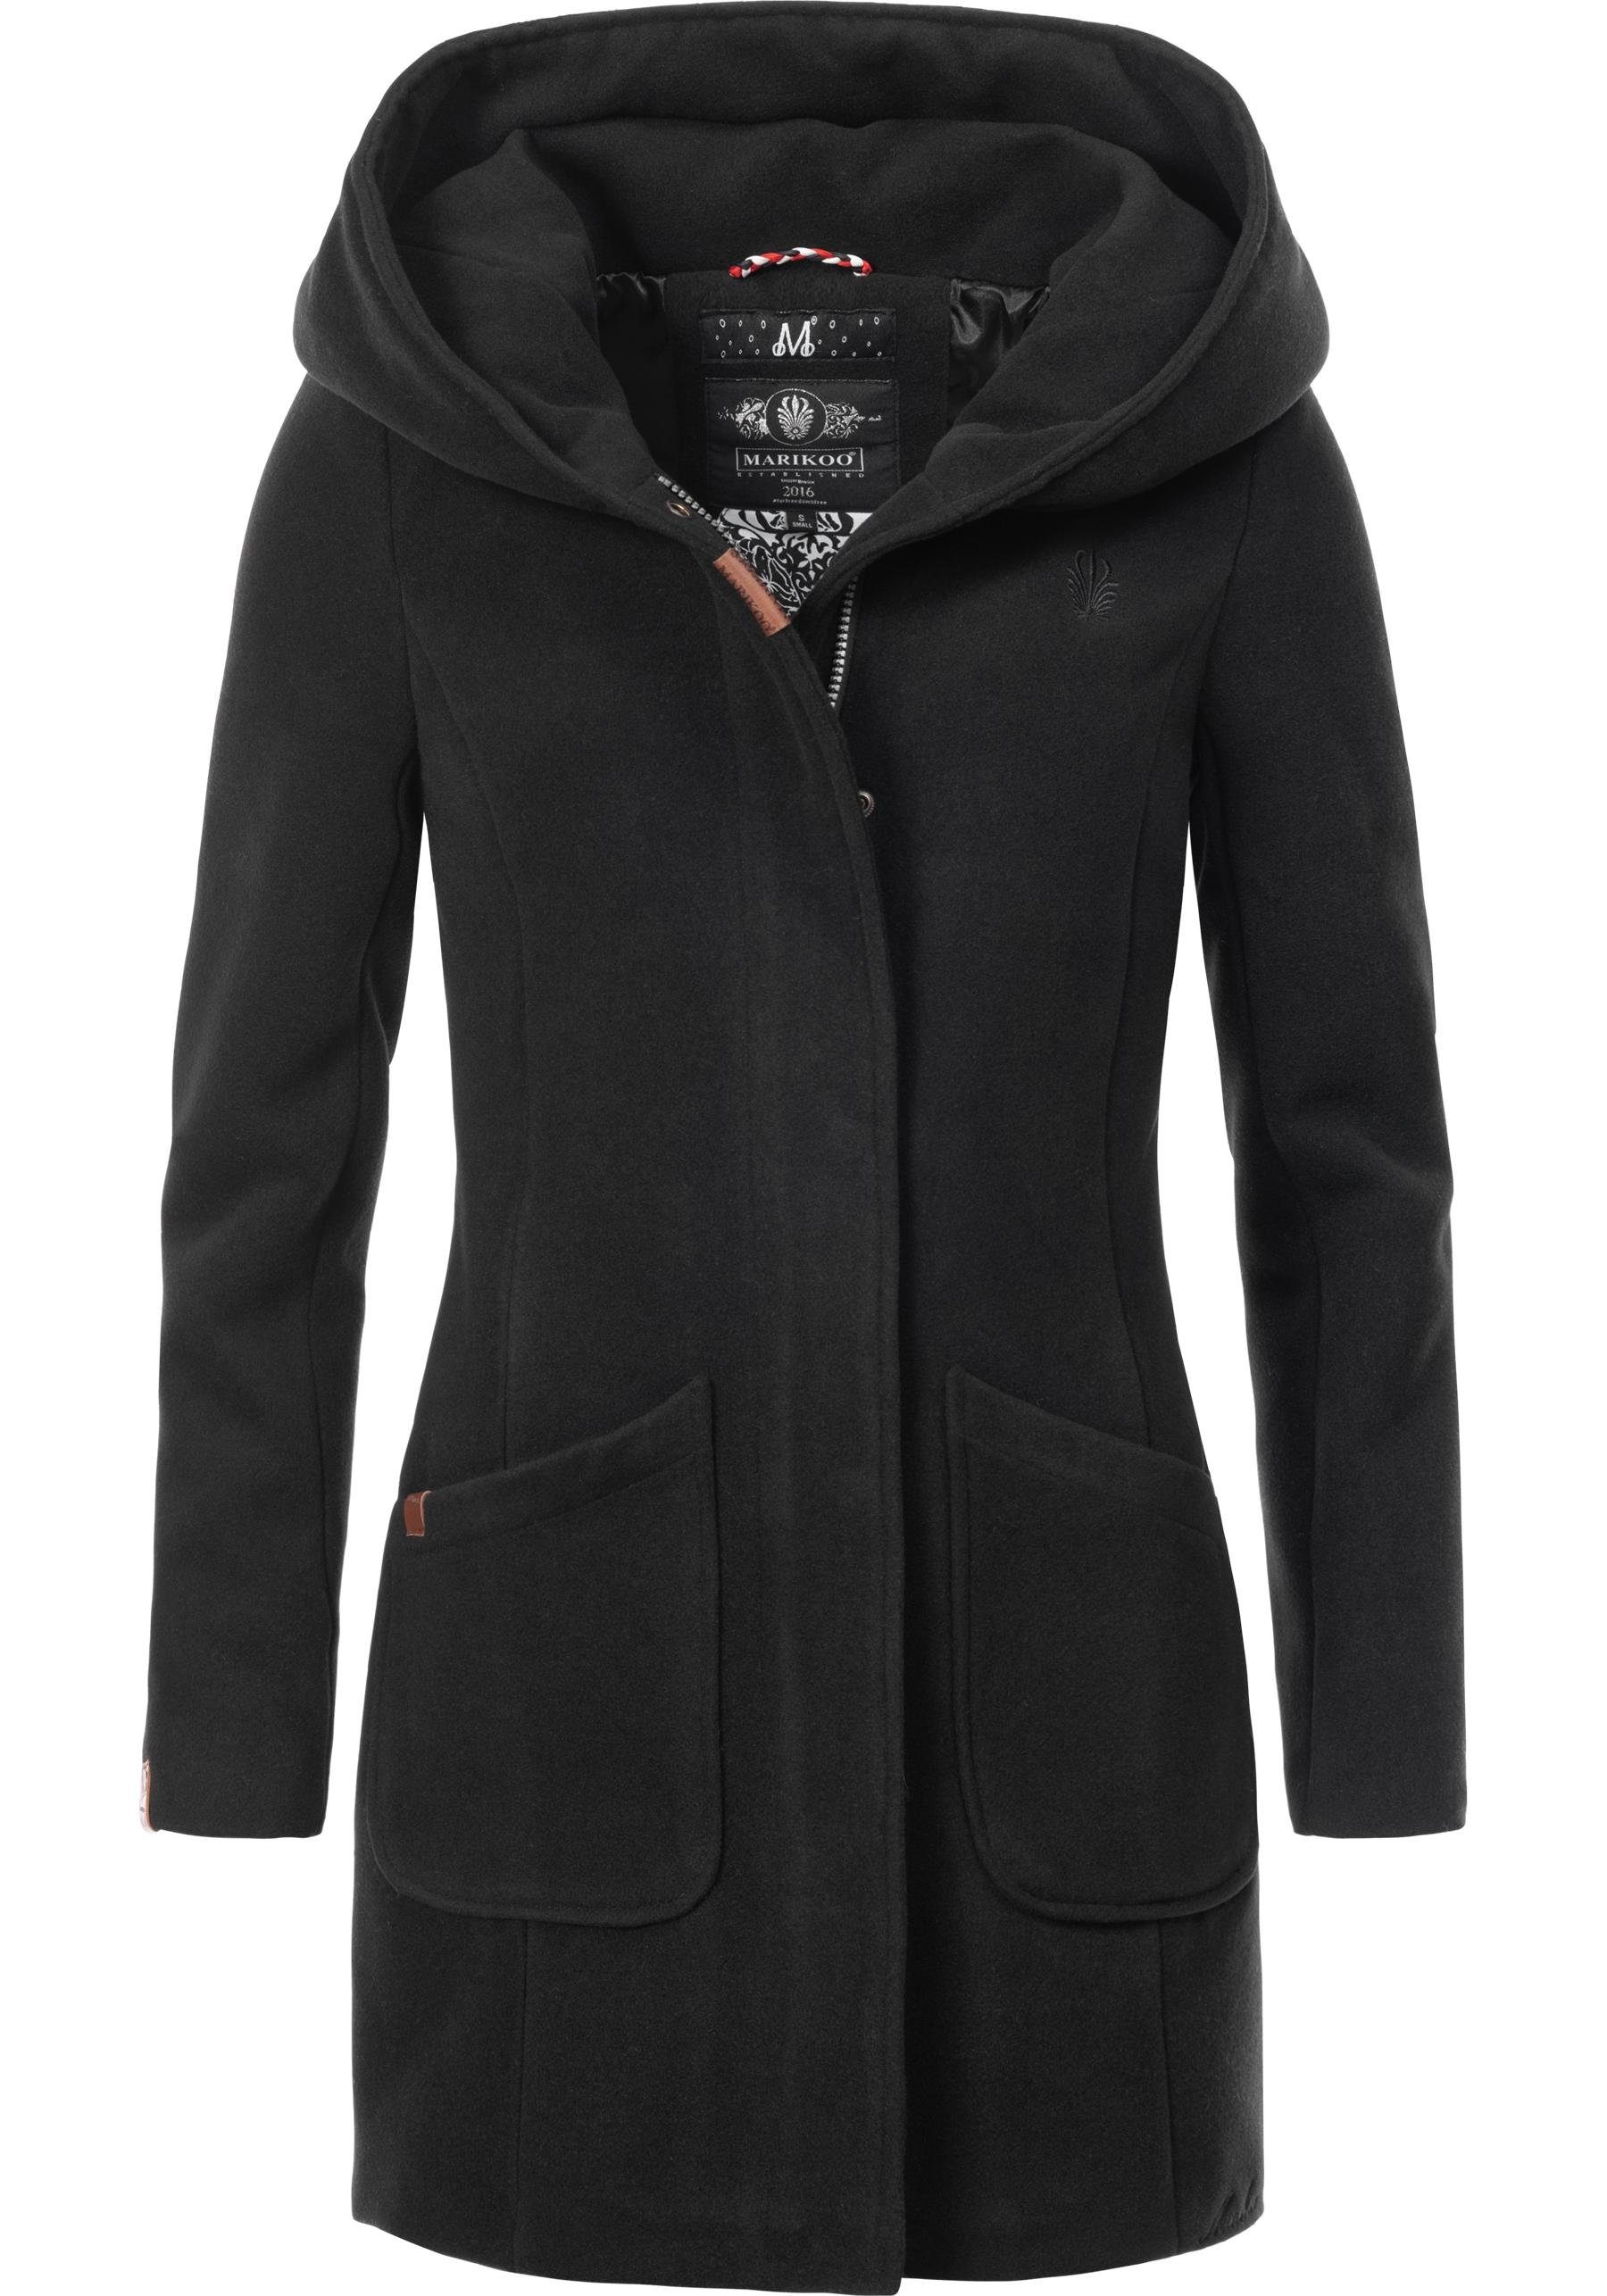 großer Marikoo Kapuze Mantel schwarz Wintermantel mit Maikoo hochwertiger